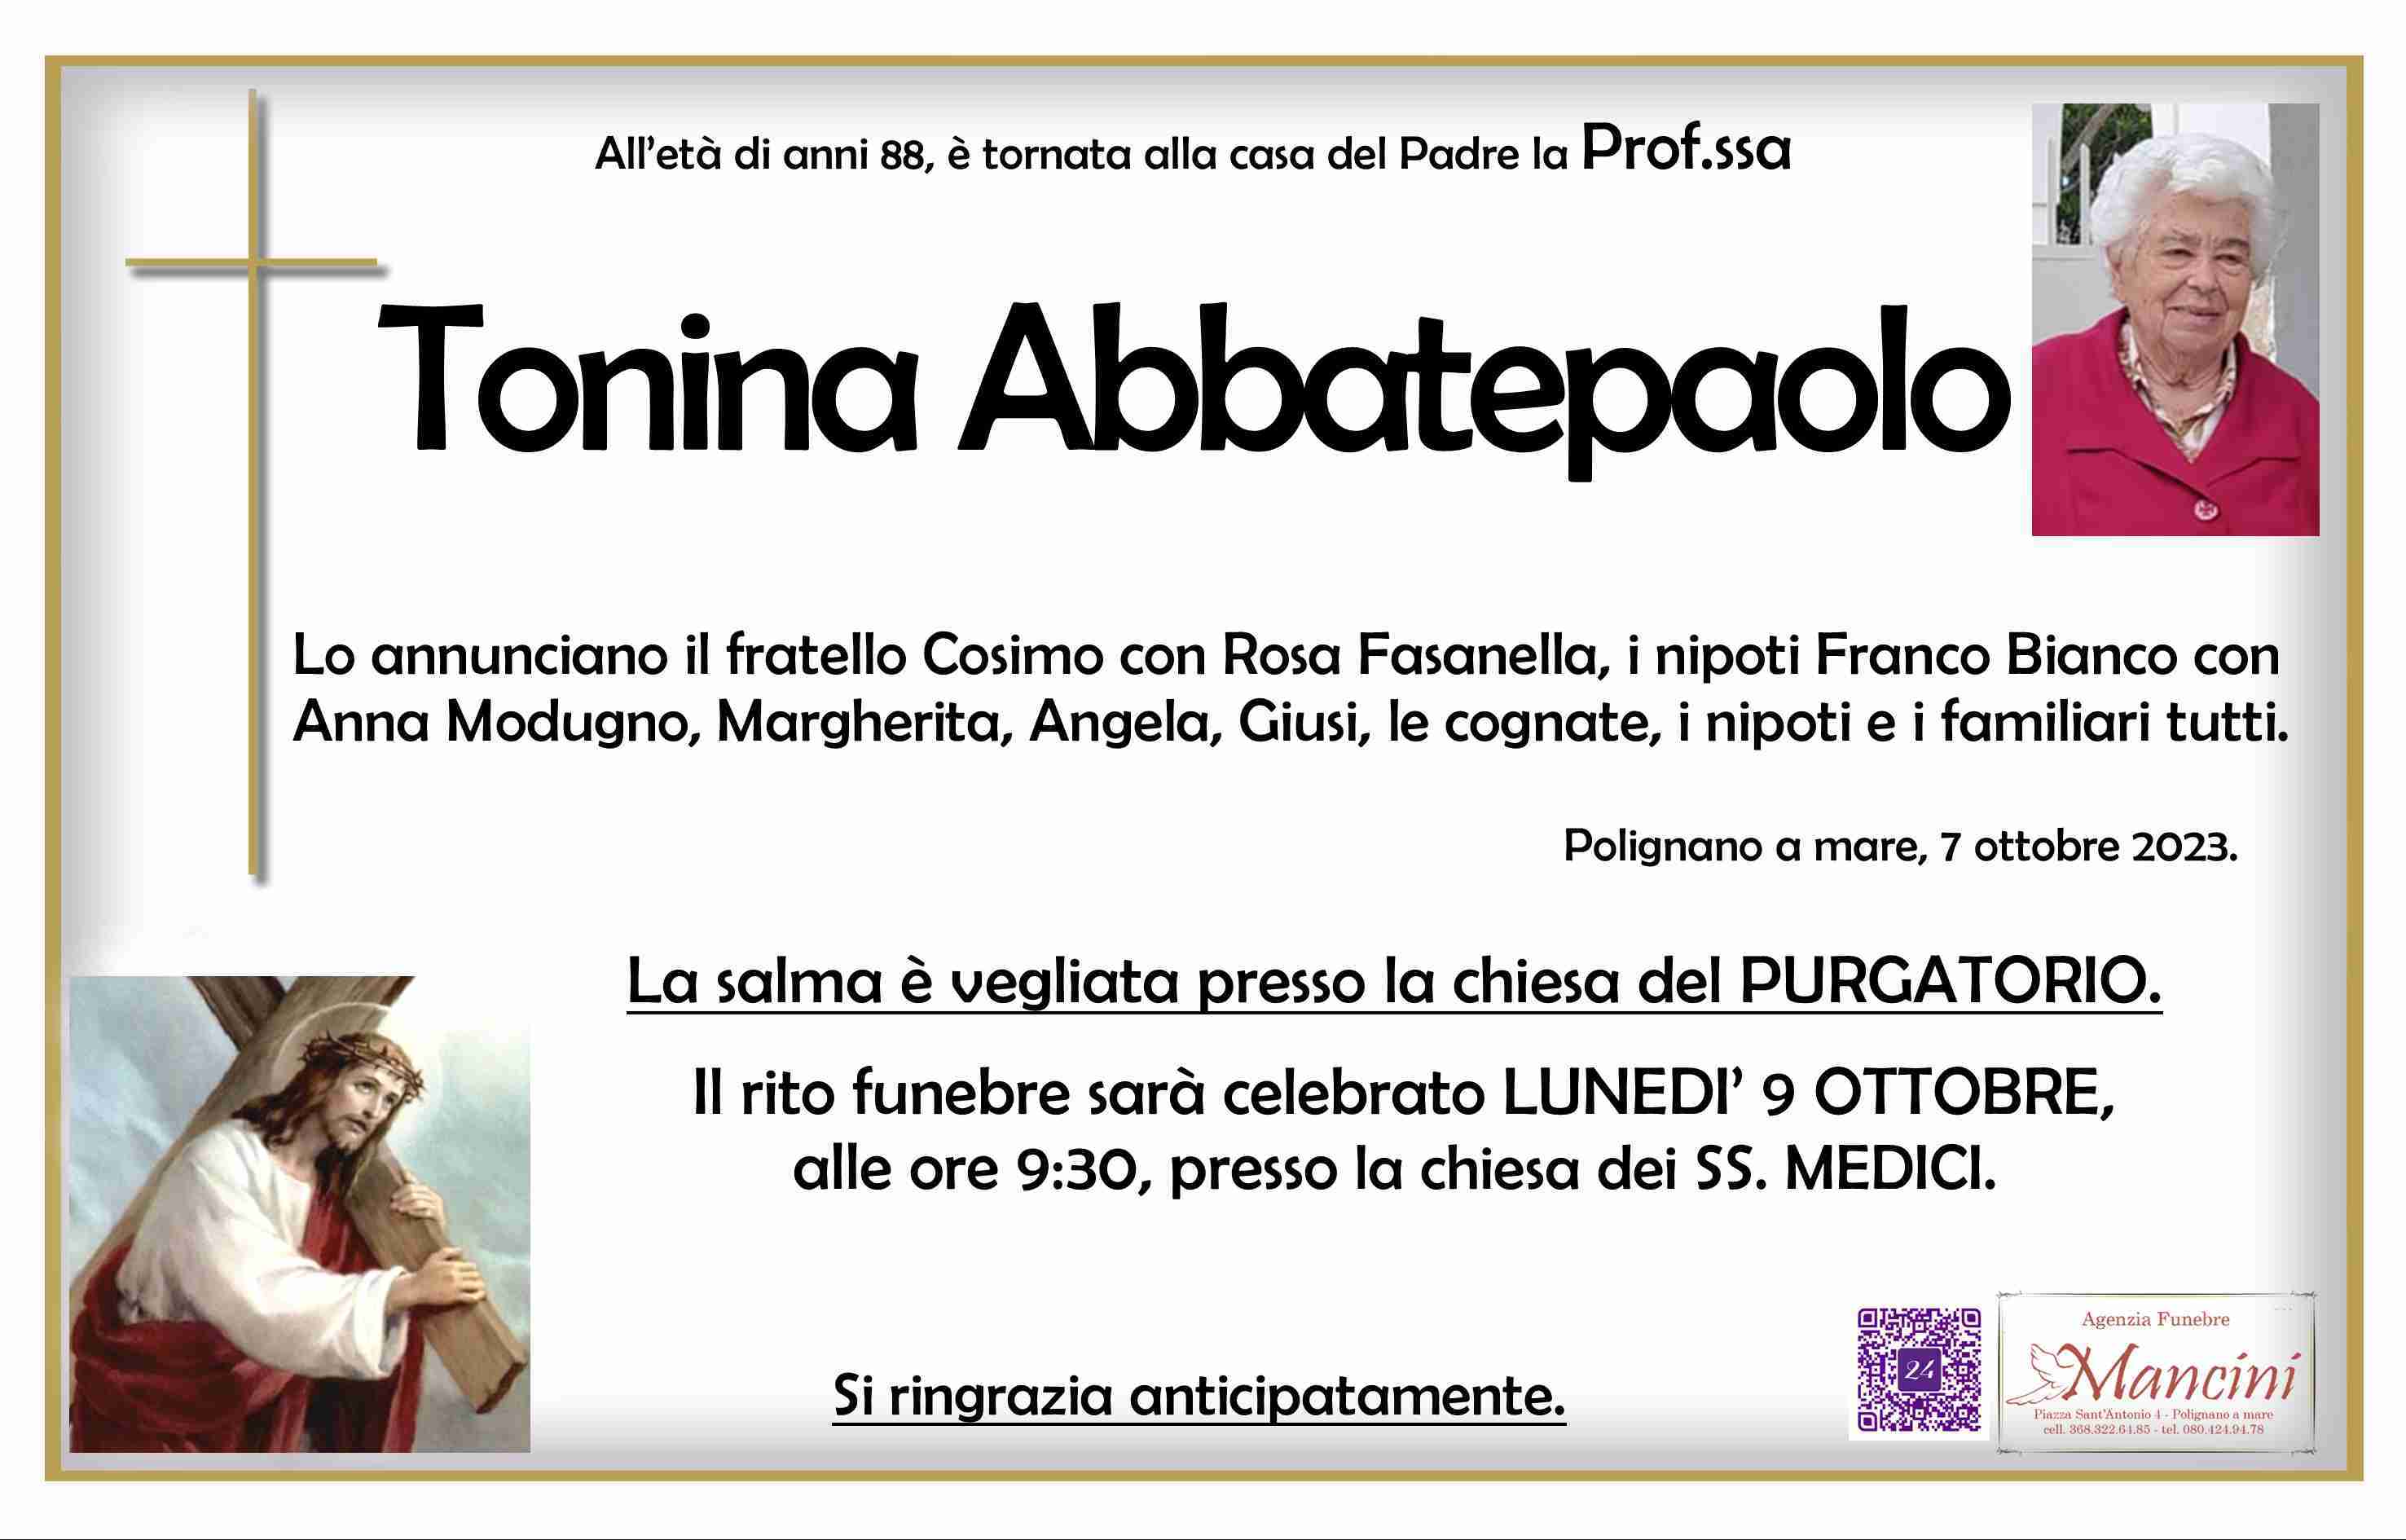 Tonina Abbatepaolo